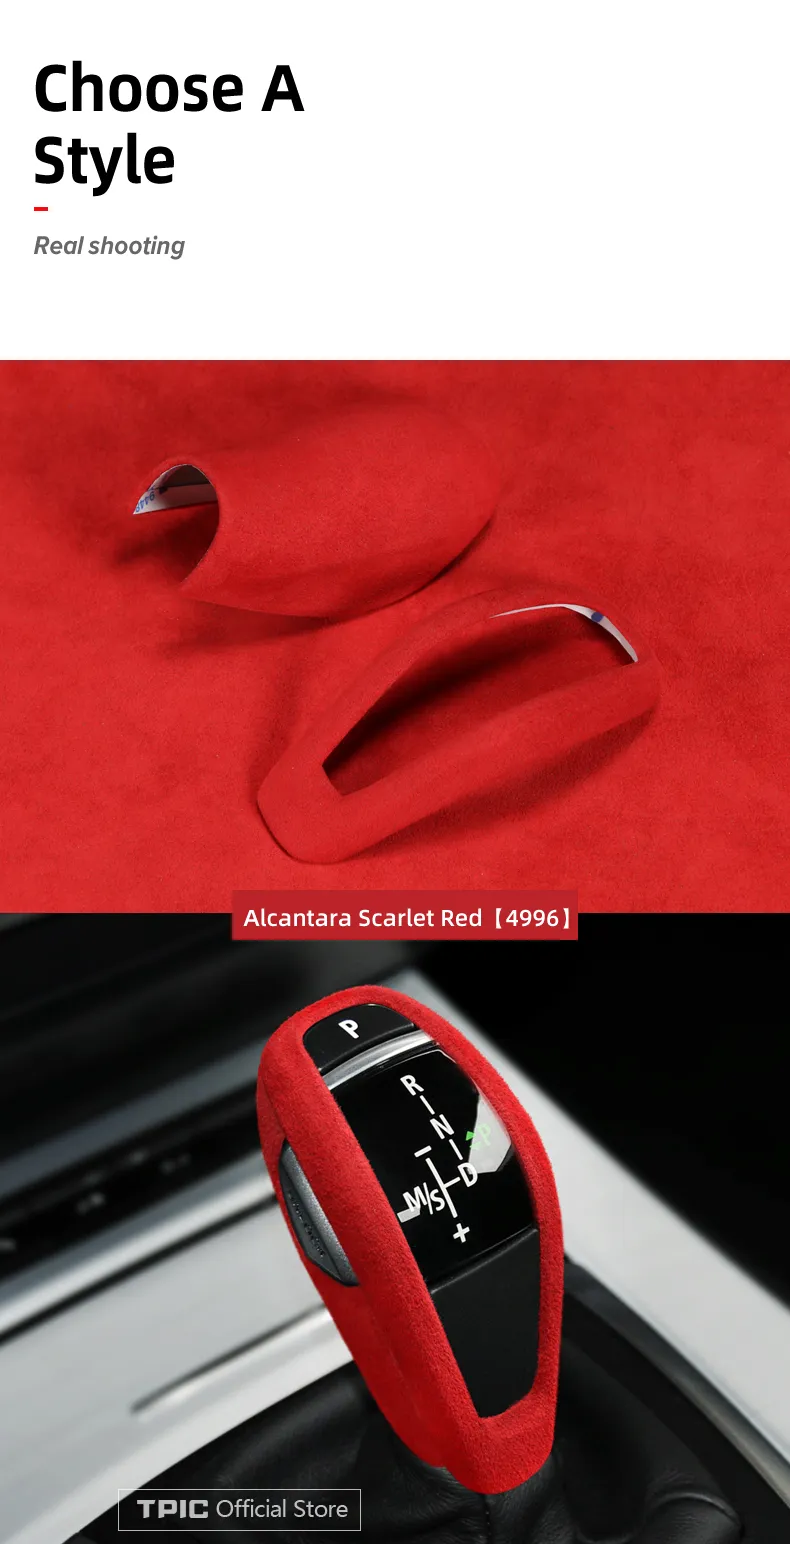 Style C Rouge RHD - Alcantara-Autocollant de couverture de pommeau